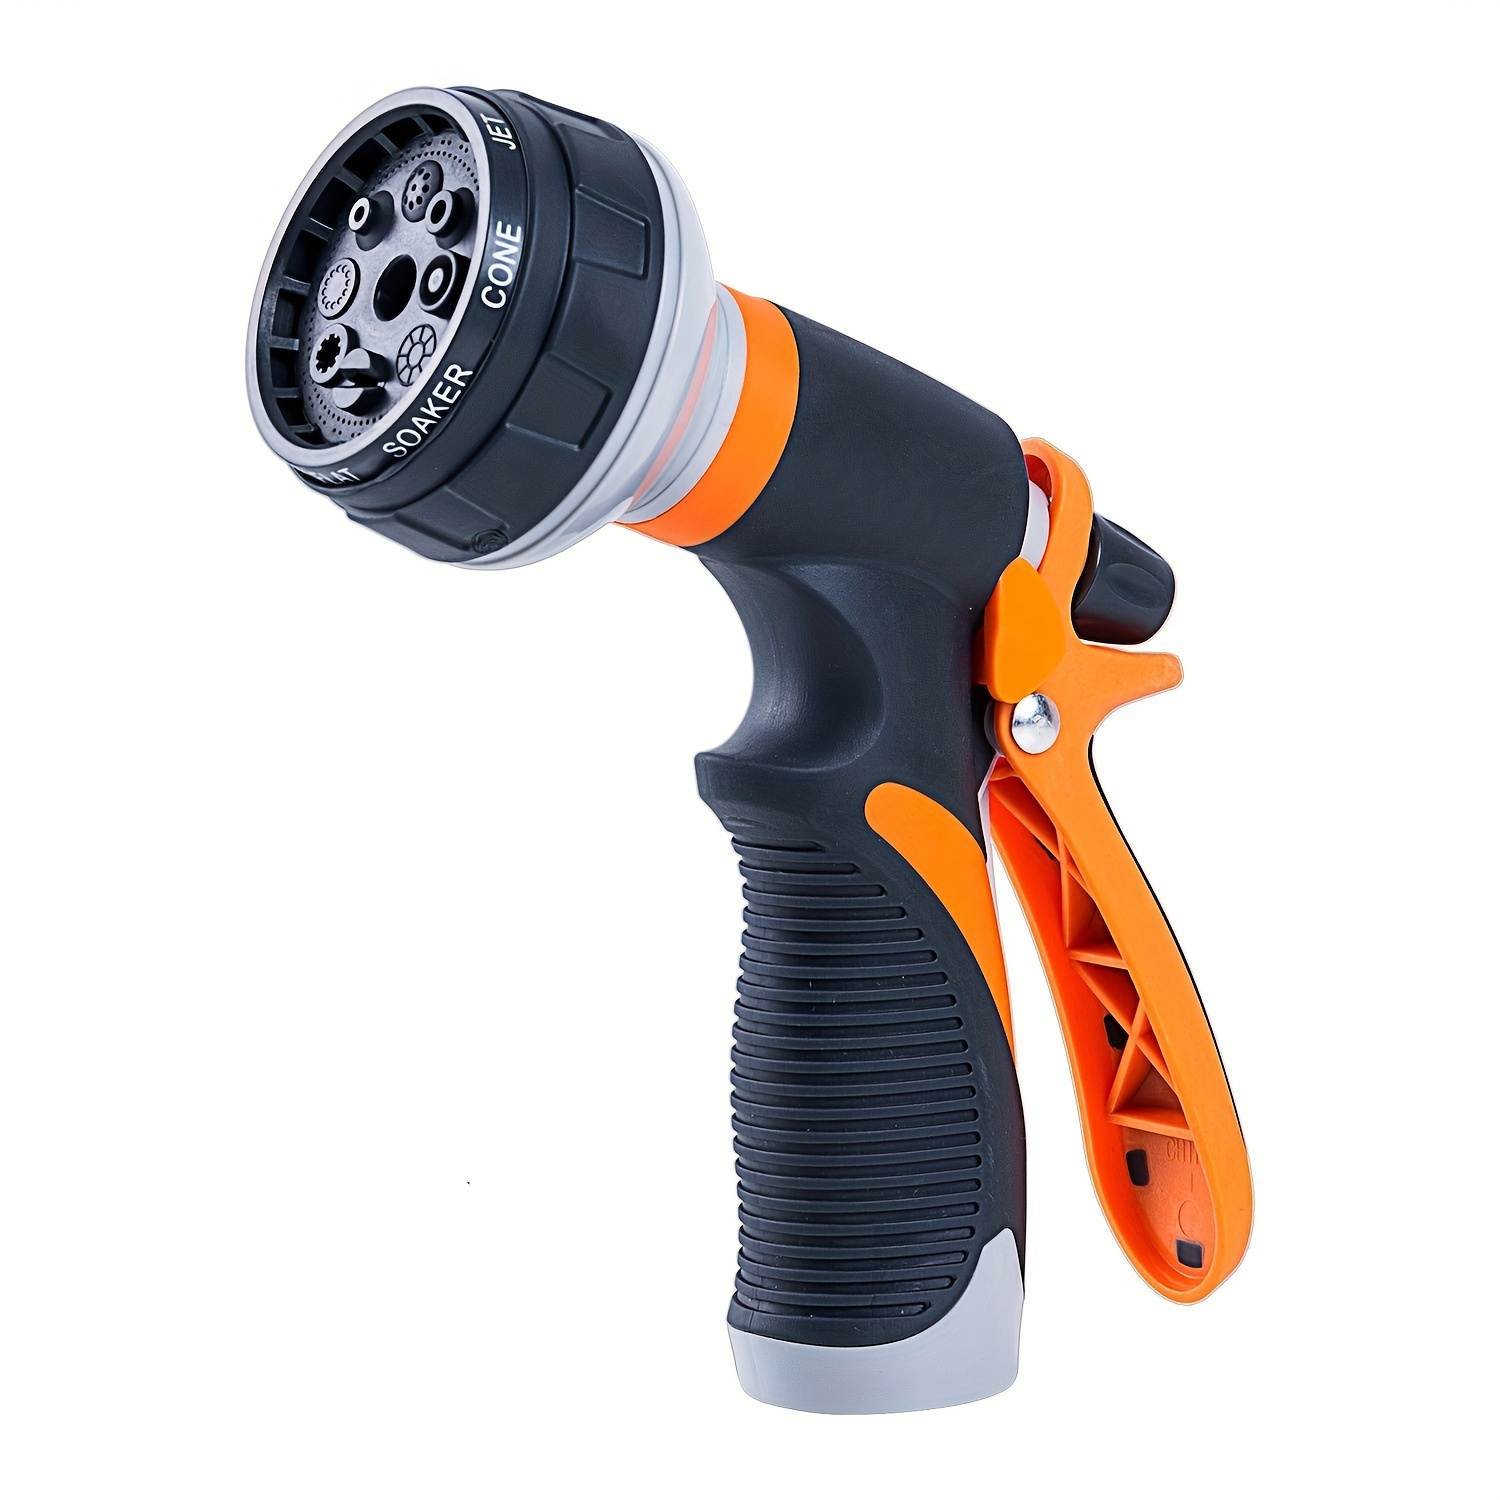 Foam Sprayer Garden Water Hose Foam Nozzle Soap Dispenser Gun For Car  Washing Pets Shower Plants Watering